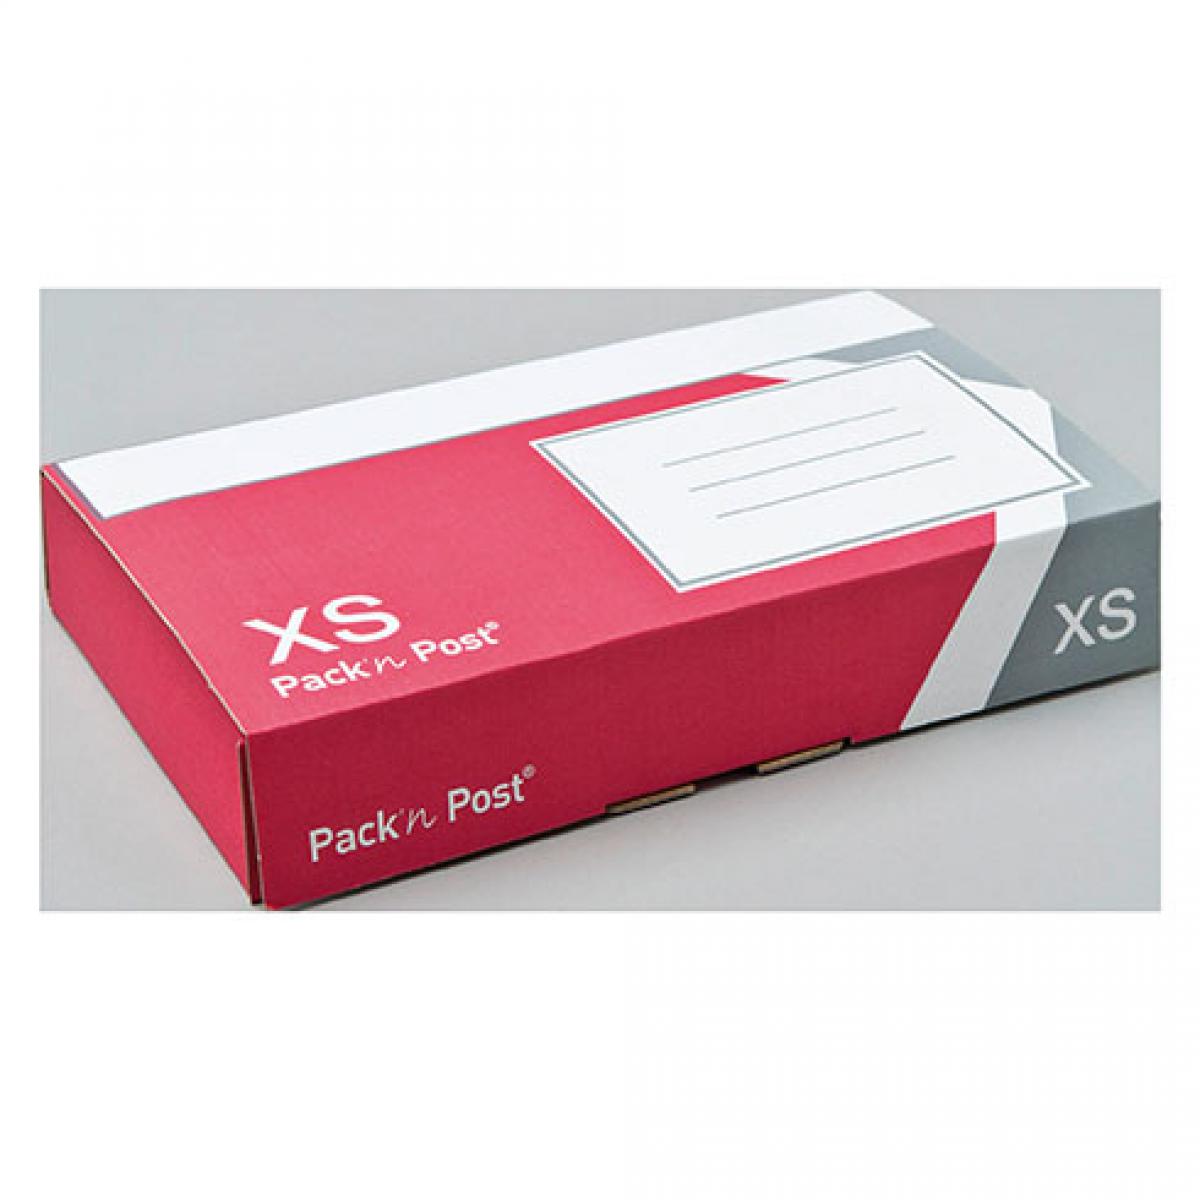 Gpvpacknpost - Boite expédition postale Pack'n Post XS - Paquet de 5 - Accessoires Bureau